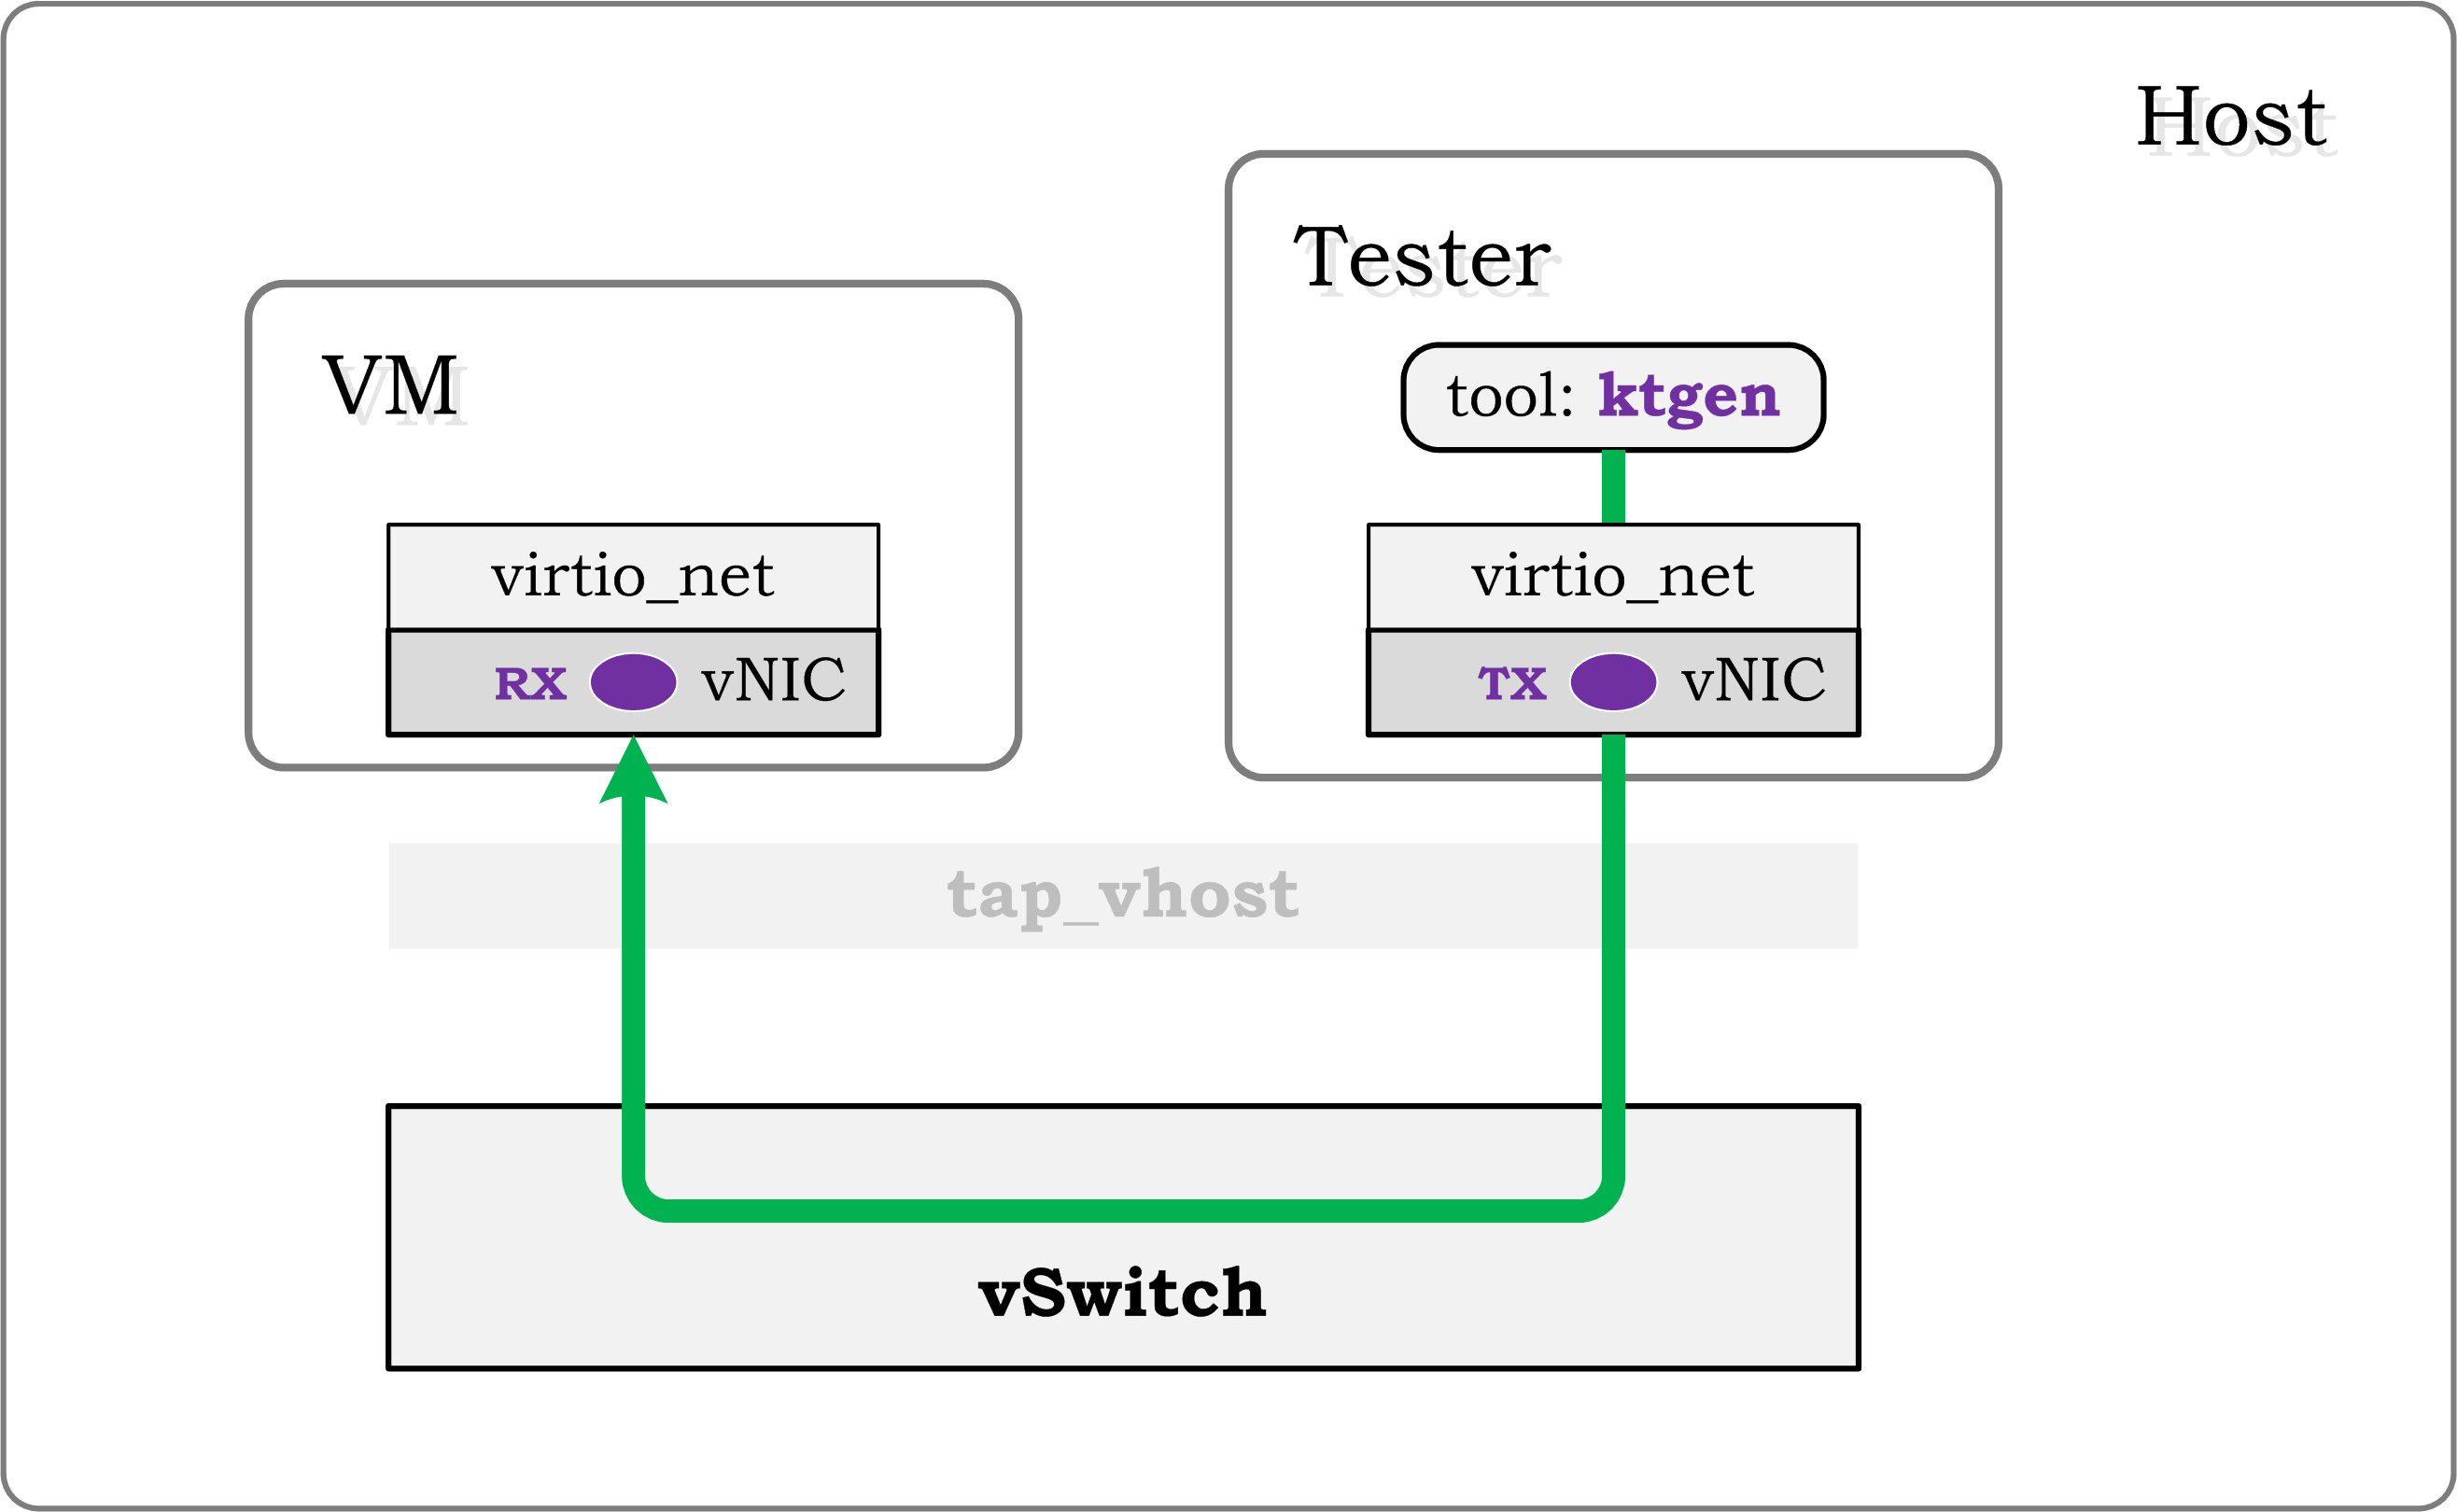 testsuites/vstf/vstf_scripts/vstf/controller/res/pktgen/Tu-1.gif